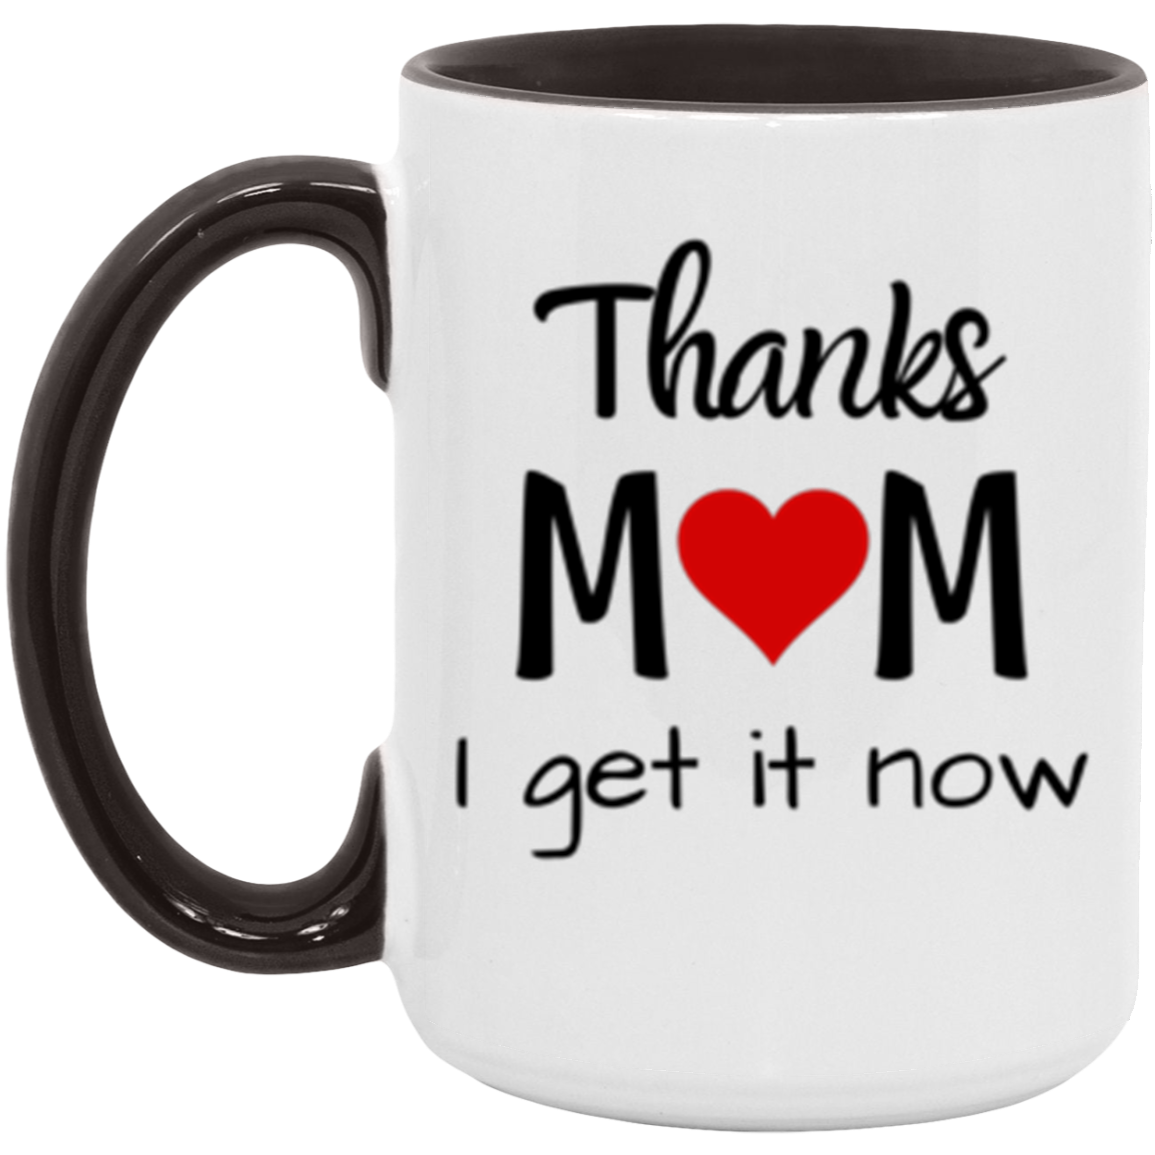 Mom Mug, Gift for Mom, Thanks Mom, Mom Gift, Mother's Day, Birthday, Christmas